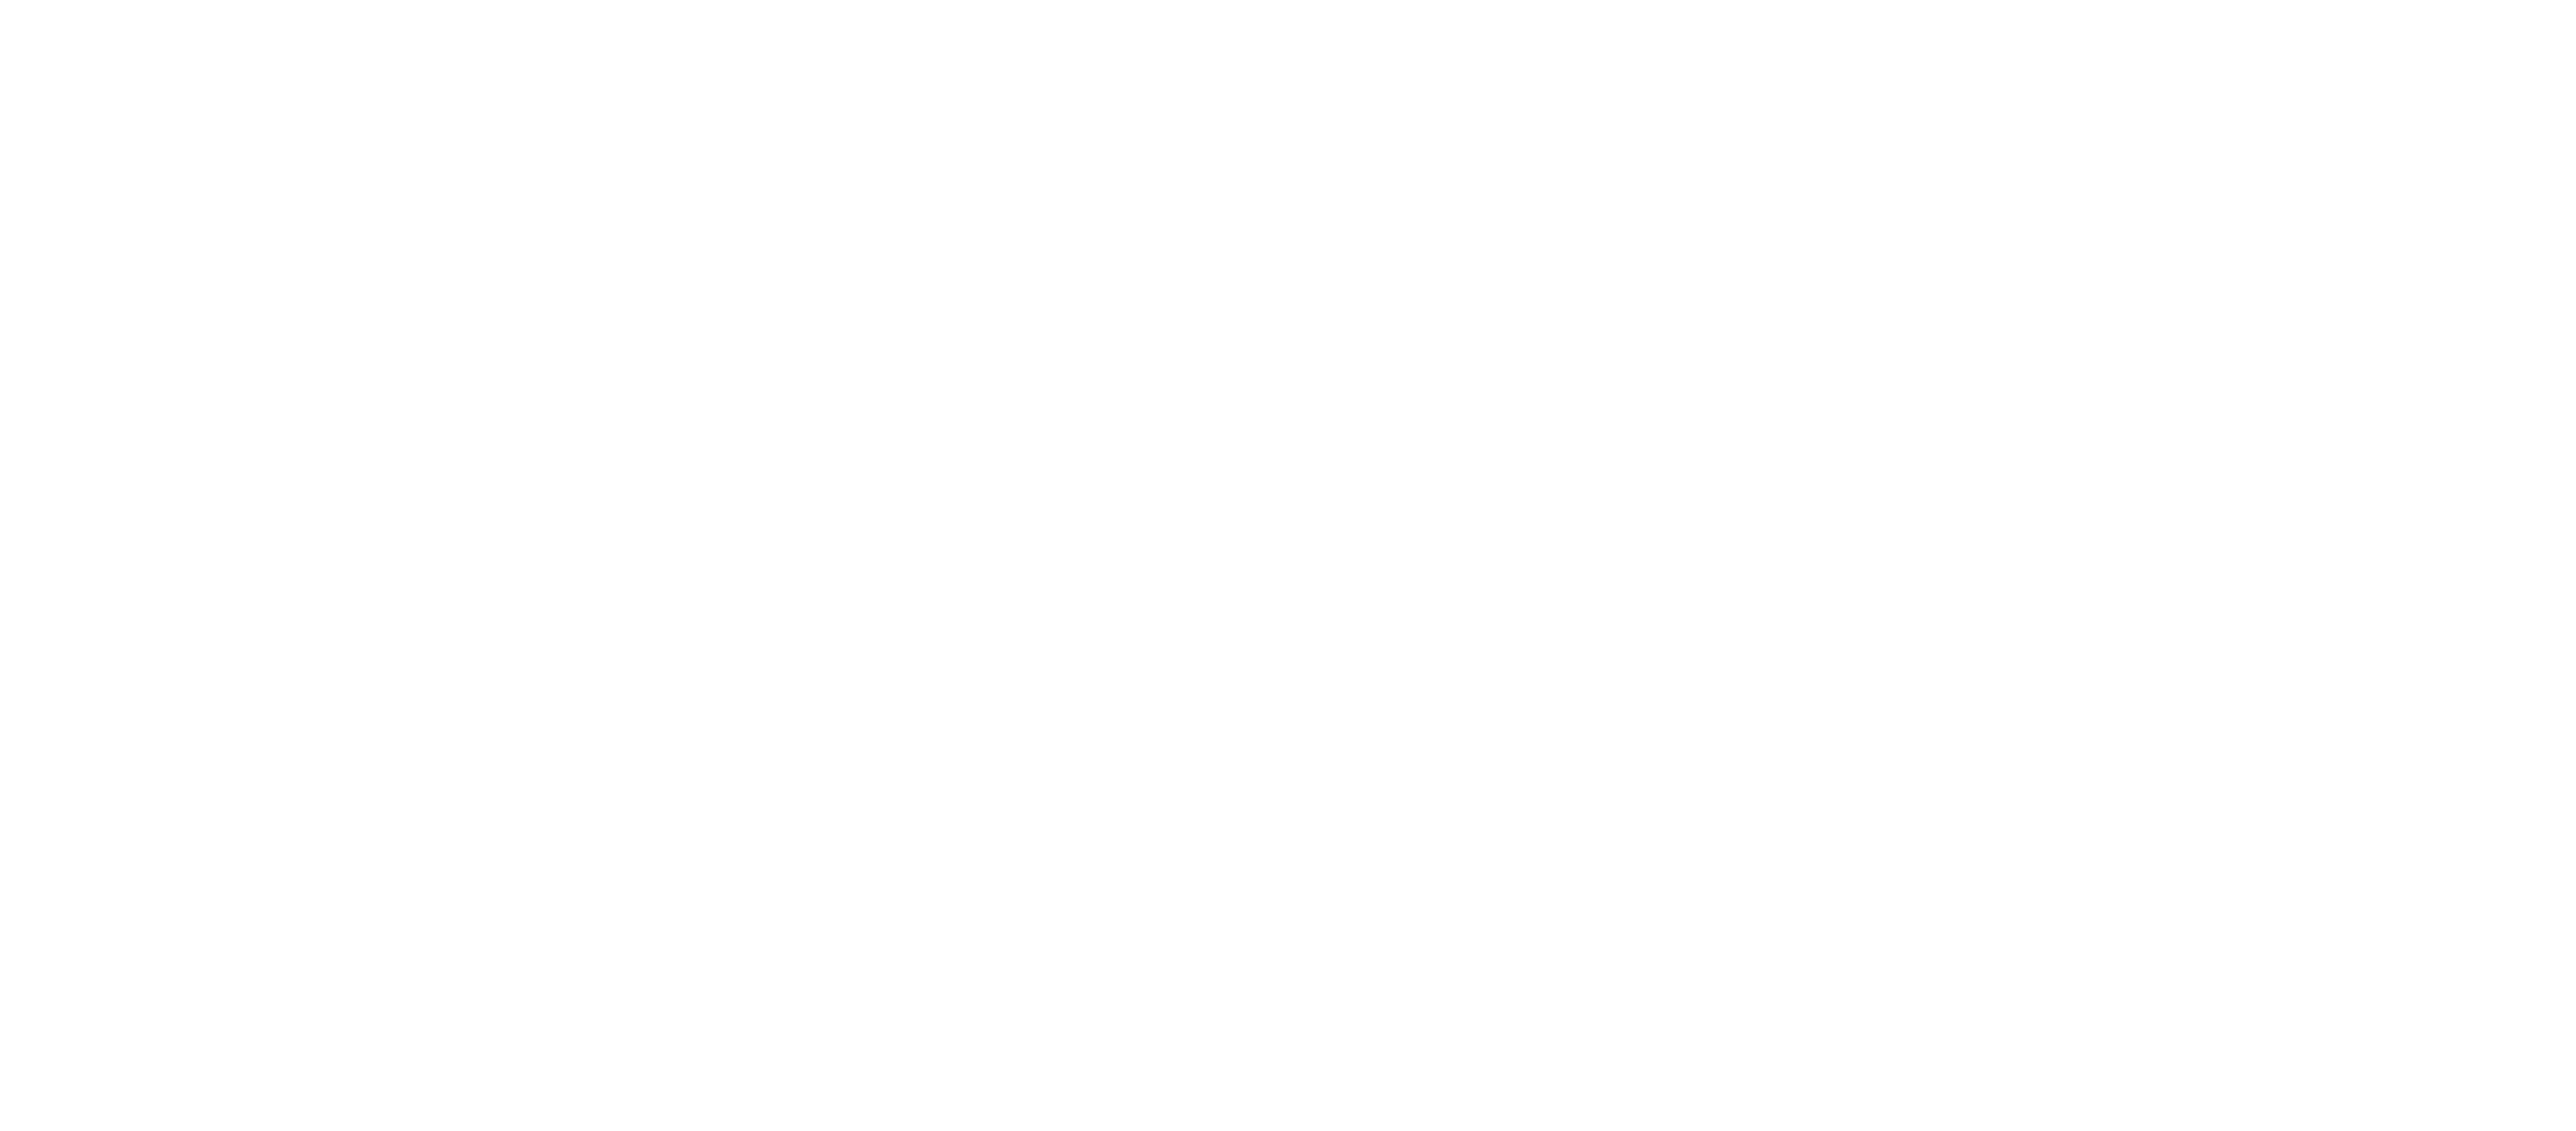 Whisky Tchankat